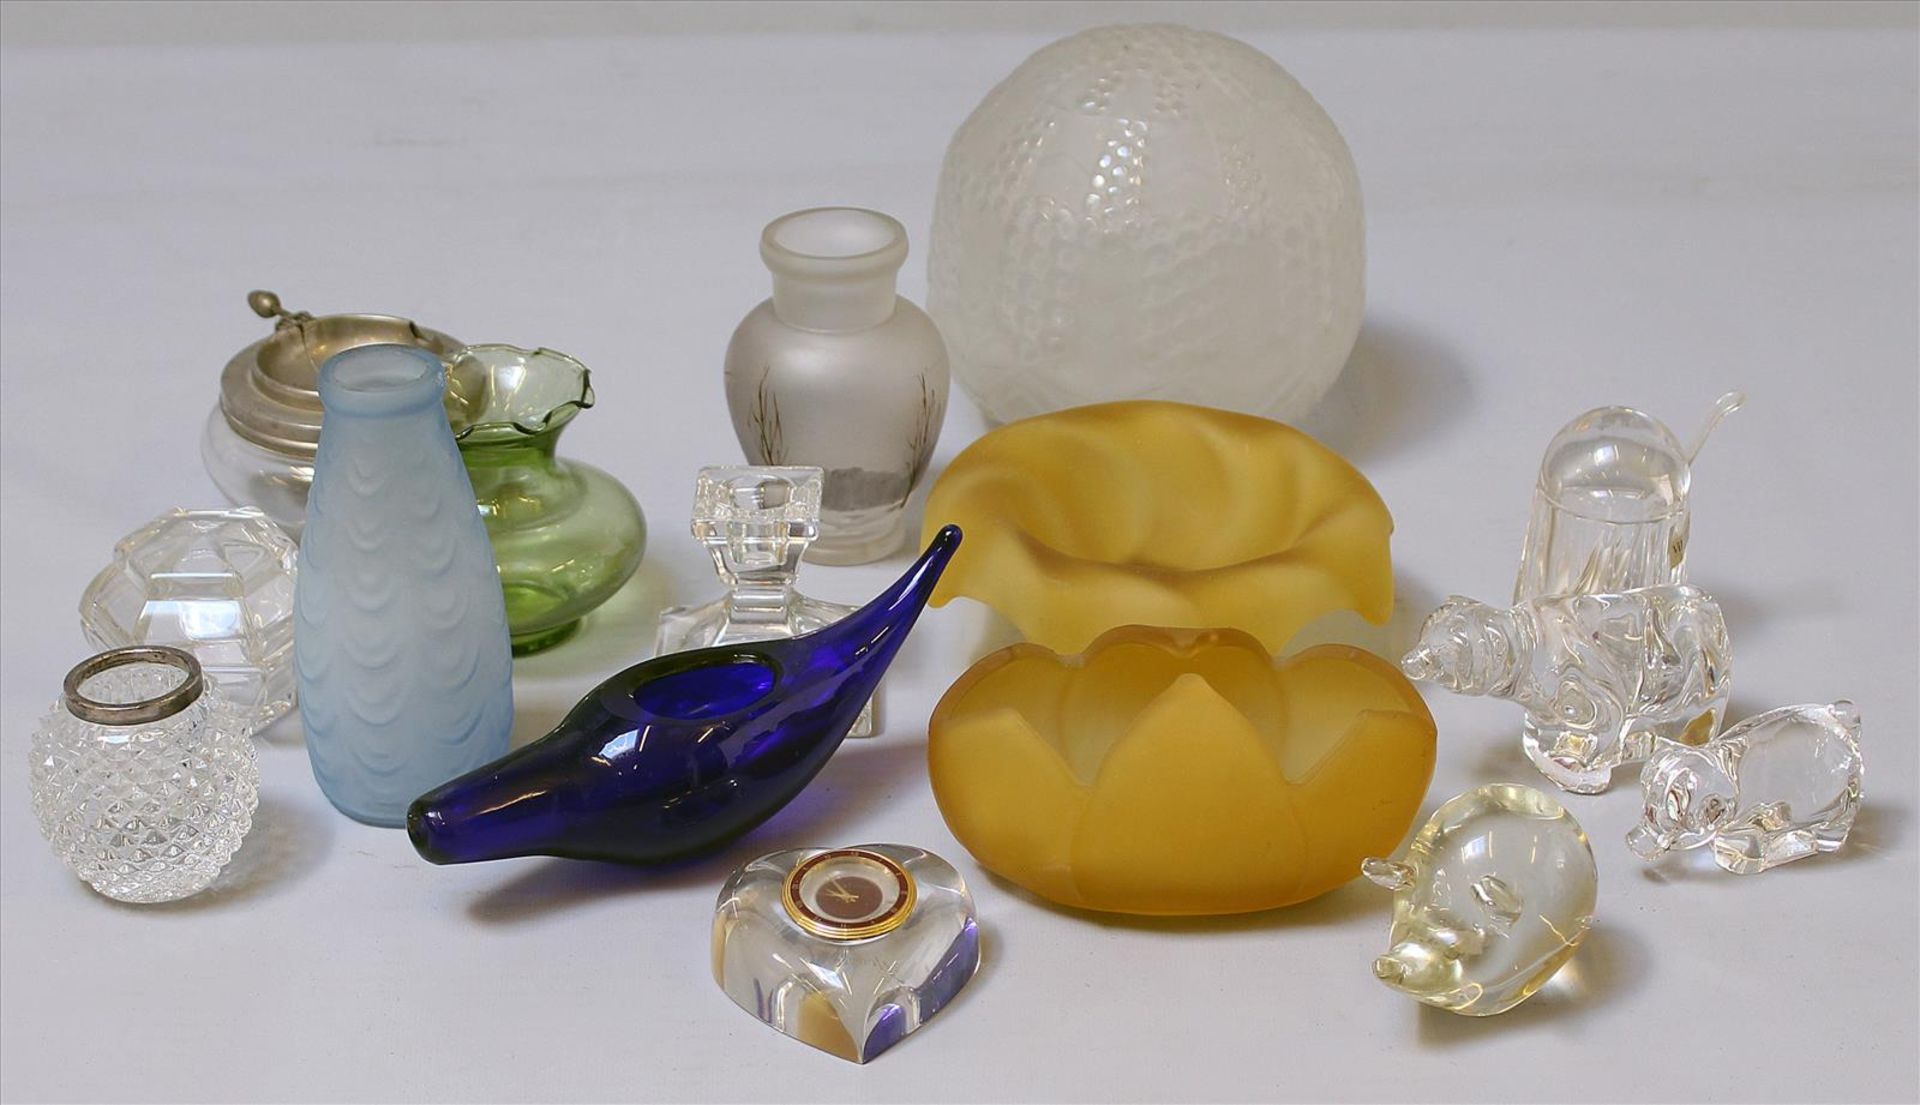 16 Teile Glas:Art Deco-Glasschirm, Tiere, Uhr sowie Leuchter von Villeroy & Boch. Teils mit